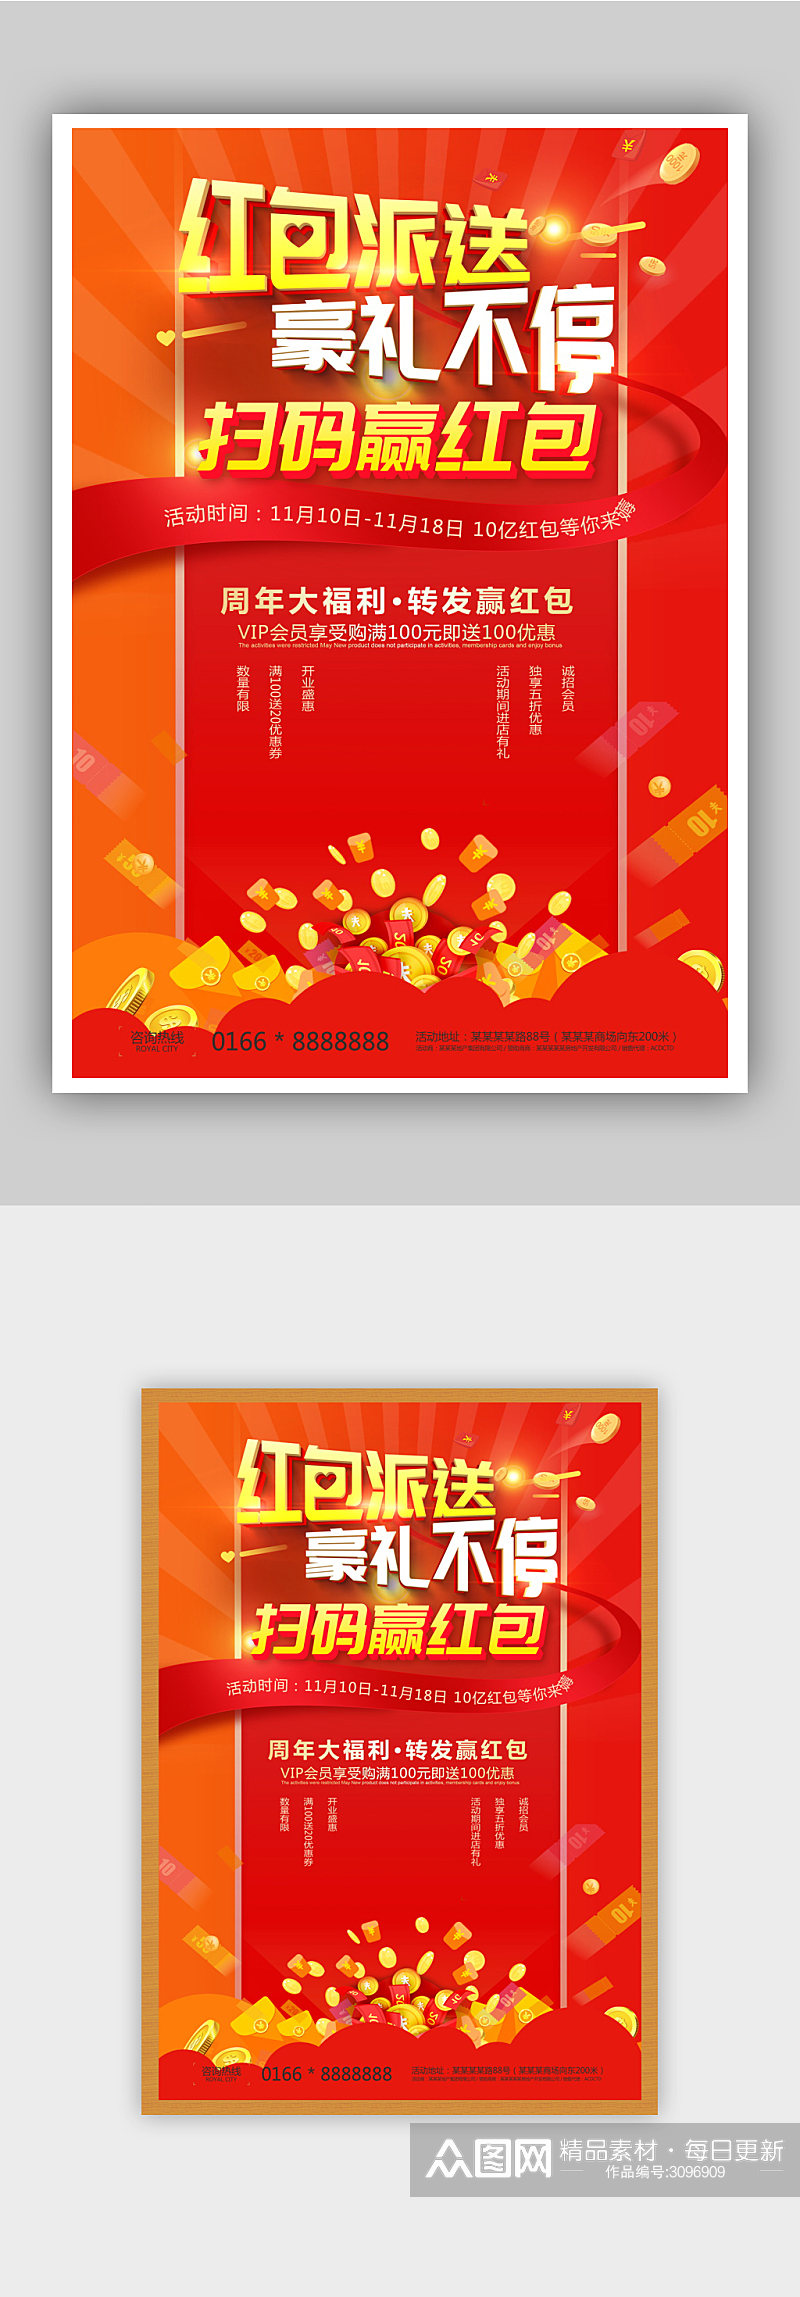 红色喜庆周年庆活动促销海报素材